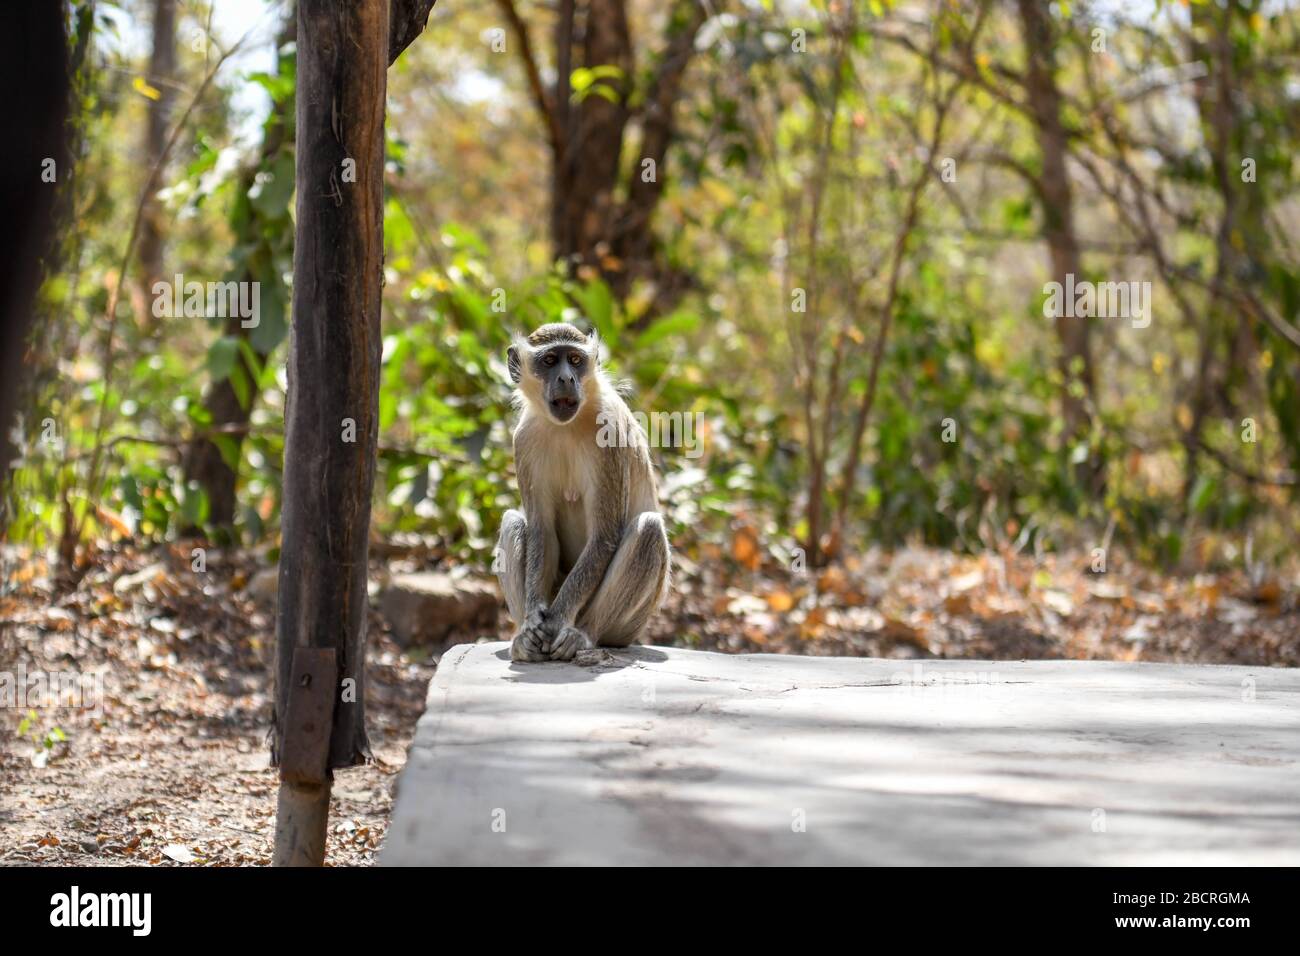 Afrique, Afrique de l'Ouest, Burkina Faso, région du Pô, parc national de Nazinga. Un singe est assis sur le sol dans le parc national de Nazinga Banque D'Images